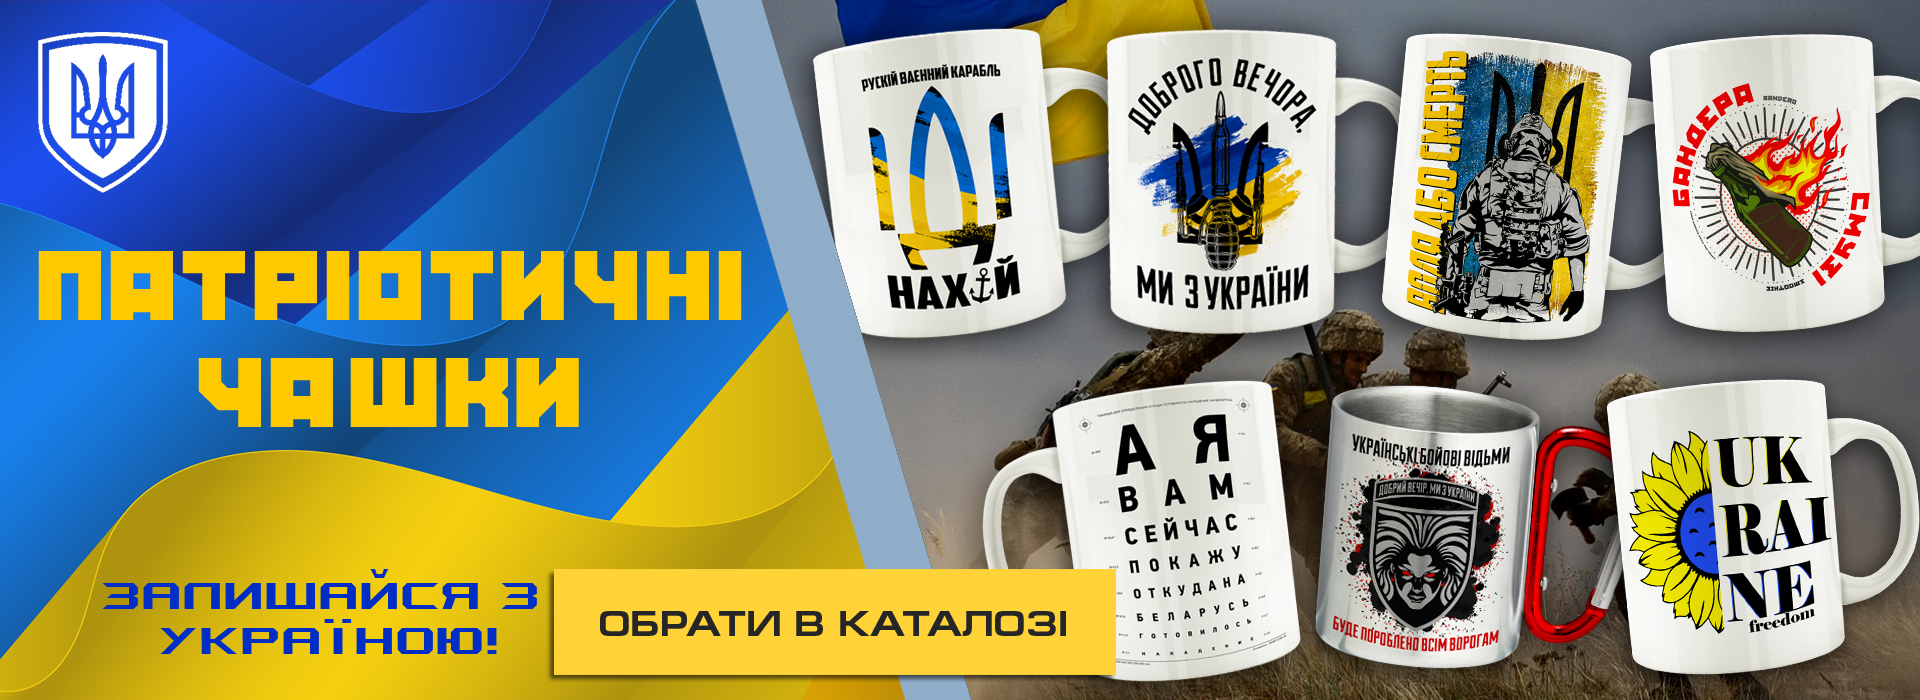 Патриотические чашки с украинской символикой